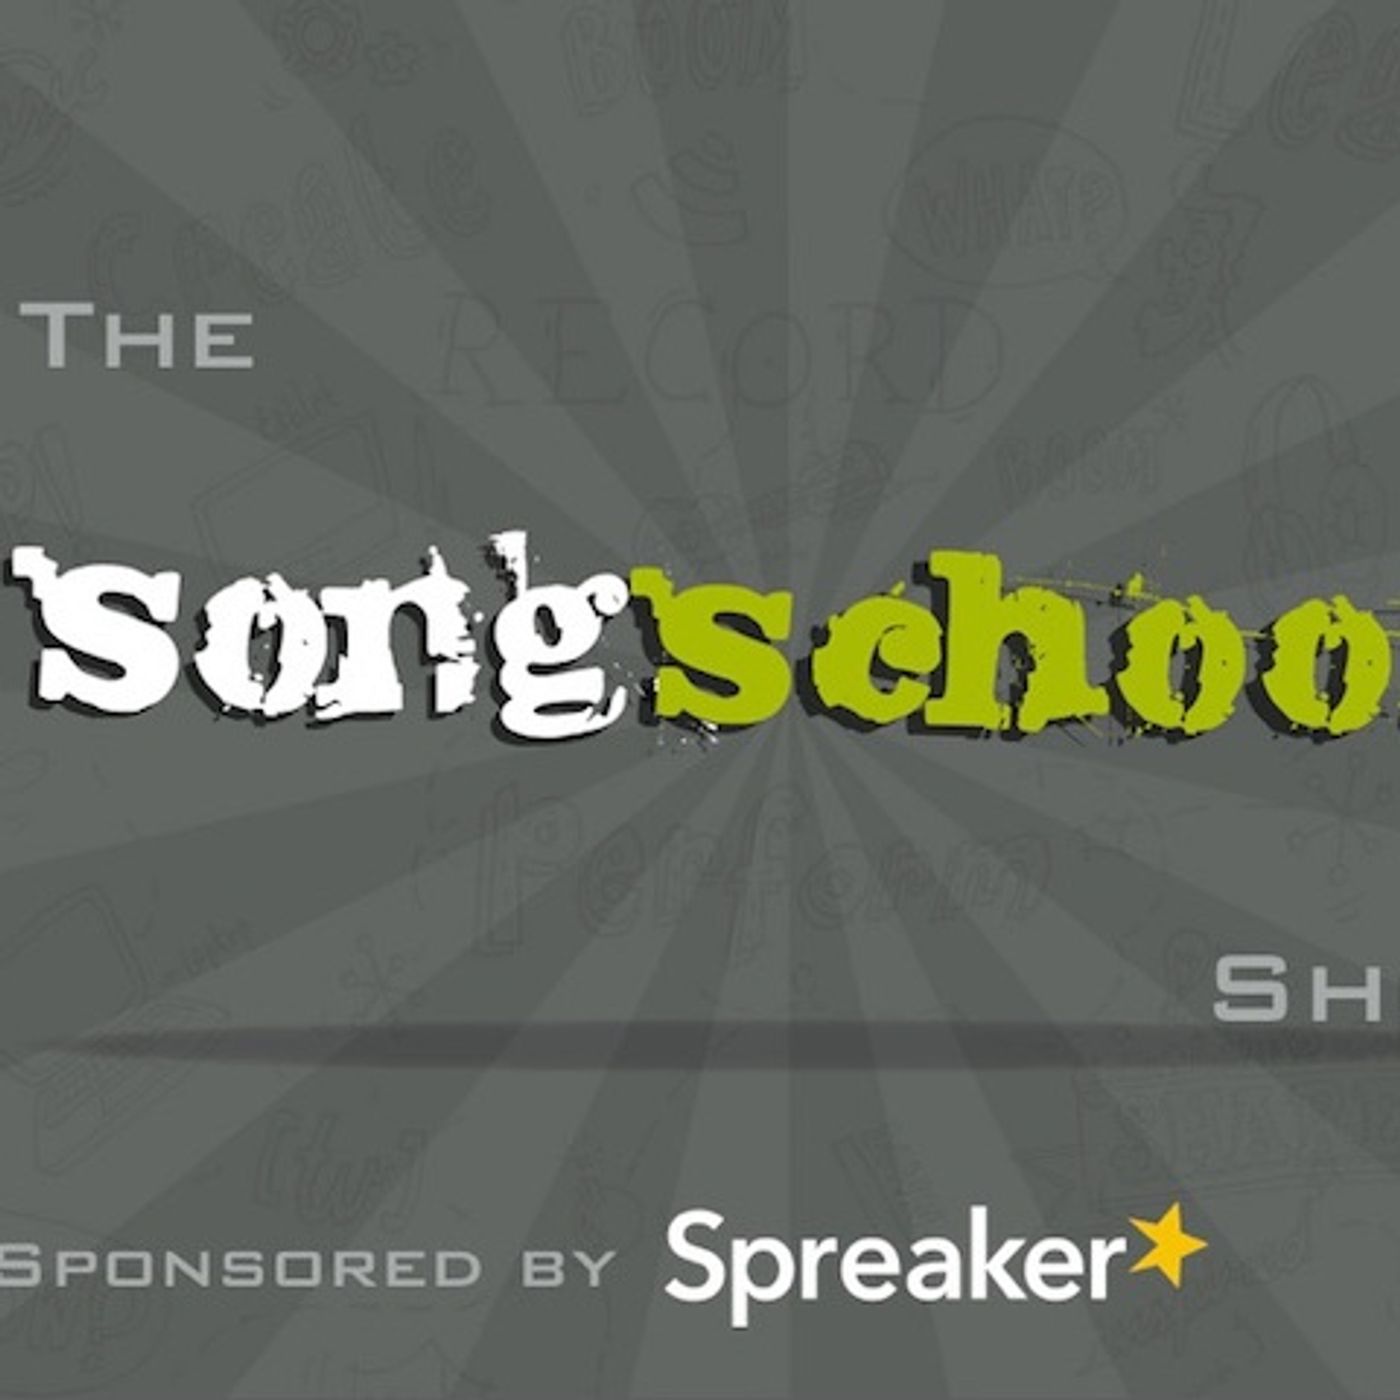 The Songschool Show @ Hartstown CS